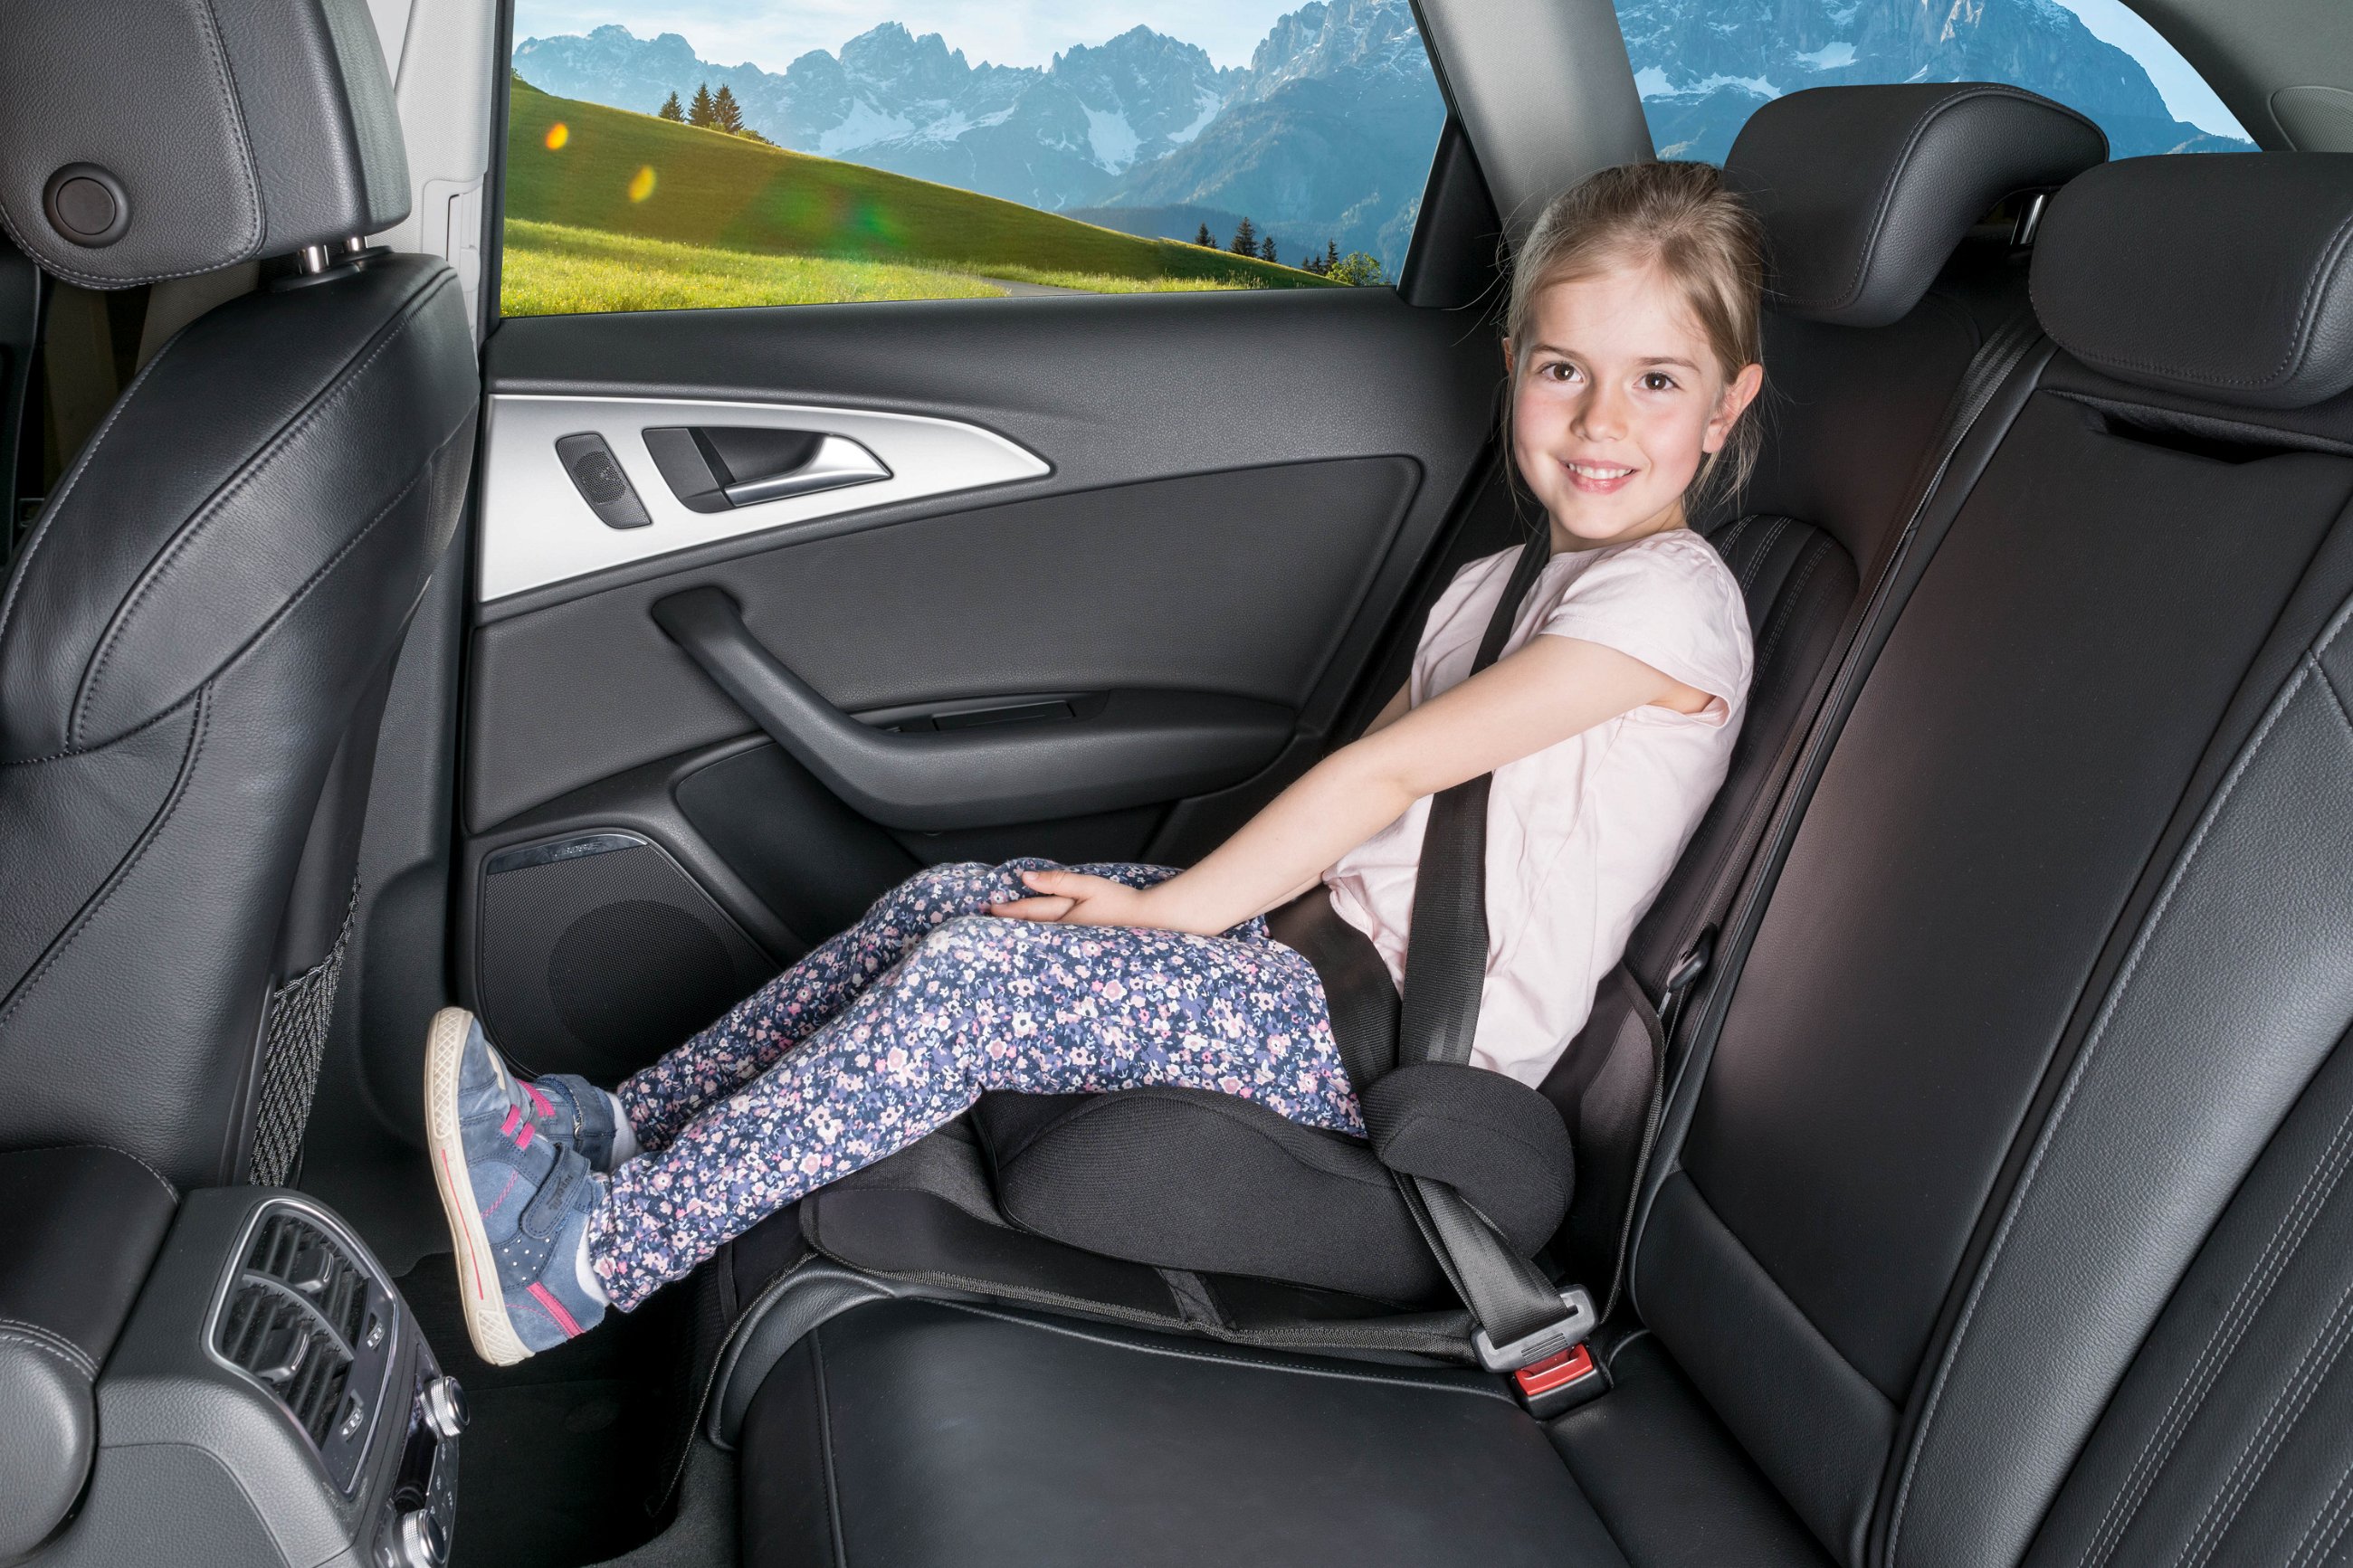 Kindersitzunterlage George Premium, Auto-Schutzunterlage, Sitzschoner Kindersitz schwarz